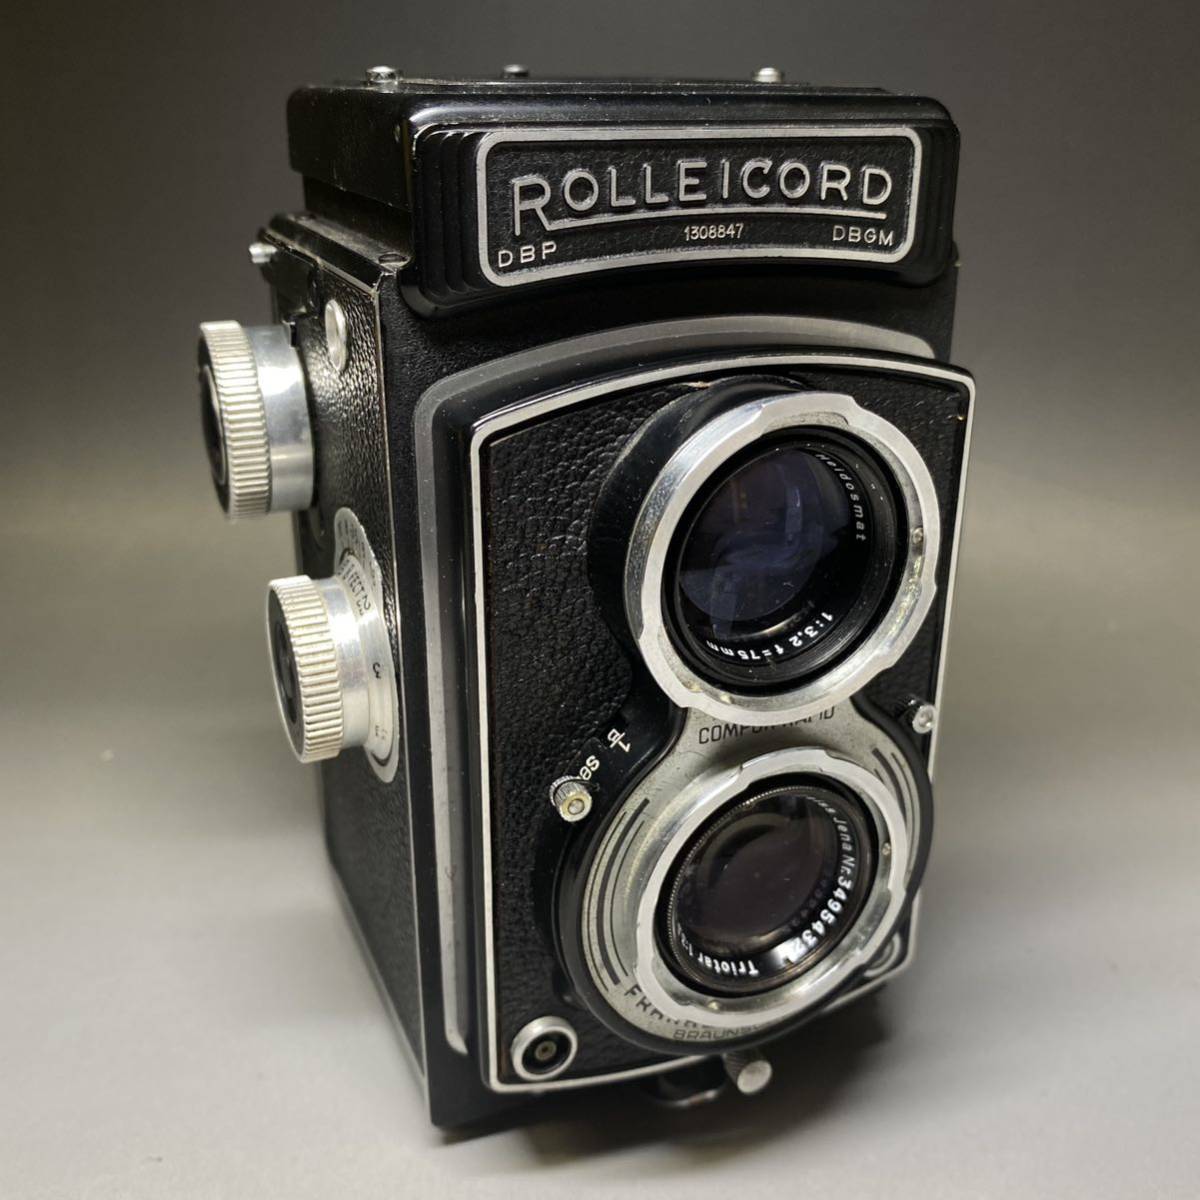 美品 ローライコード Rolleicord DBP 二眼レフ 二眼レフカメラ 75mm F3.5 二眼カメラ ローライ